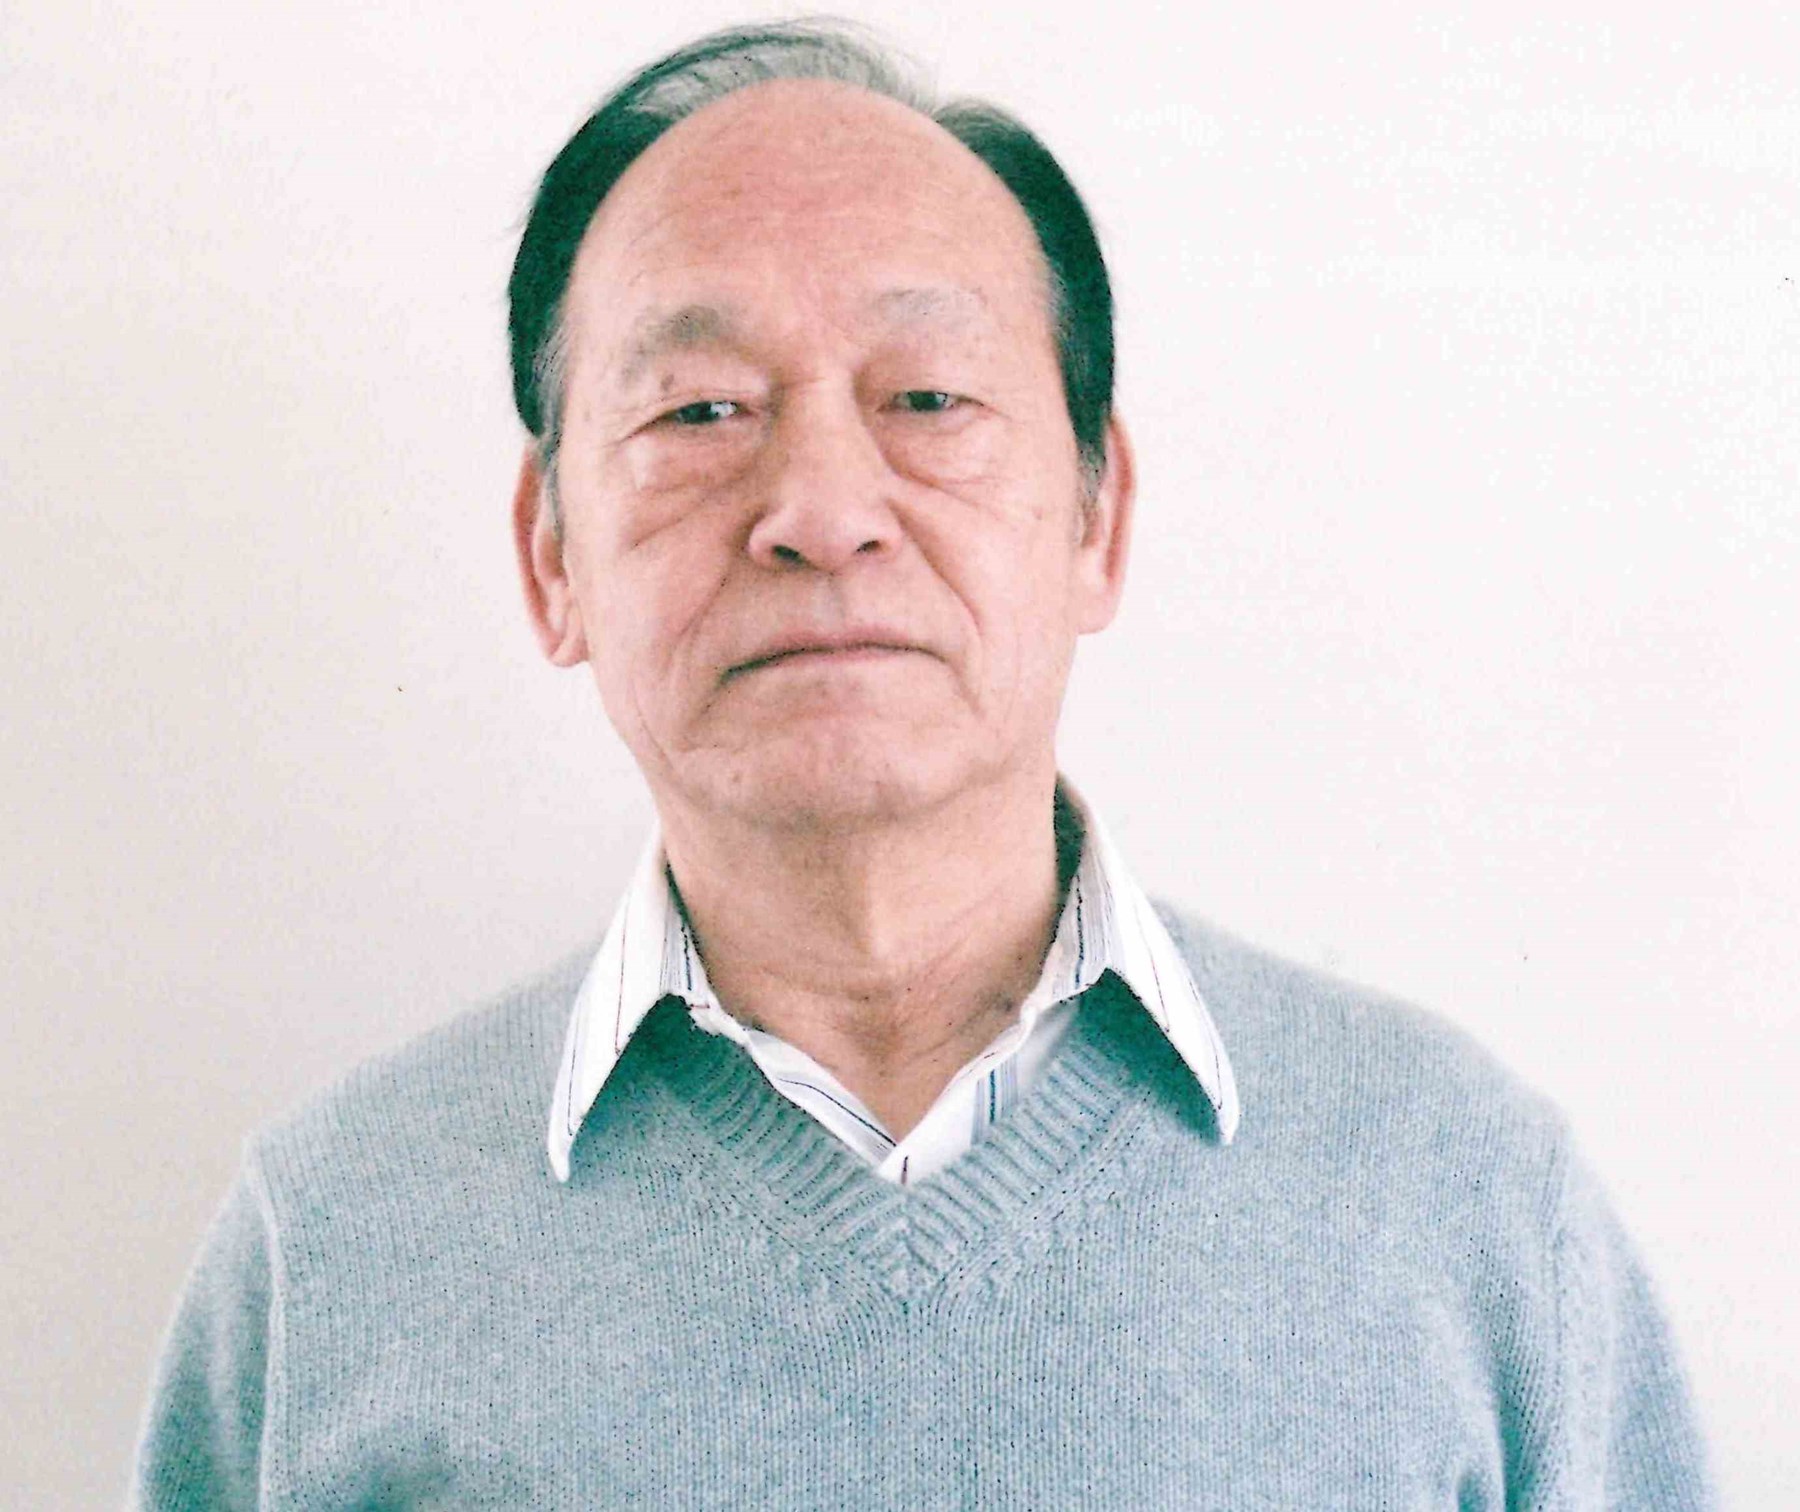 George Liu